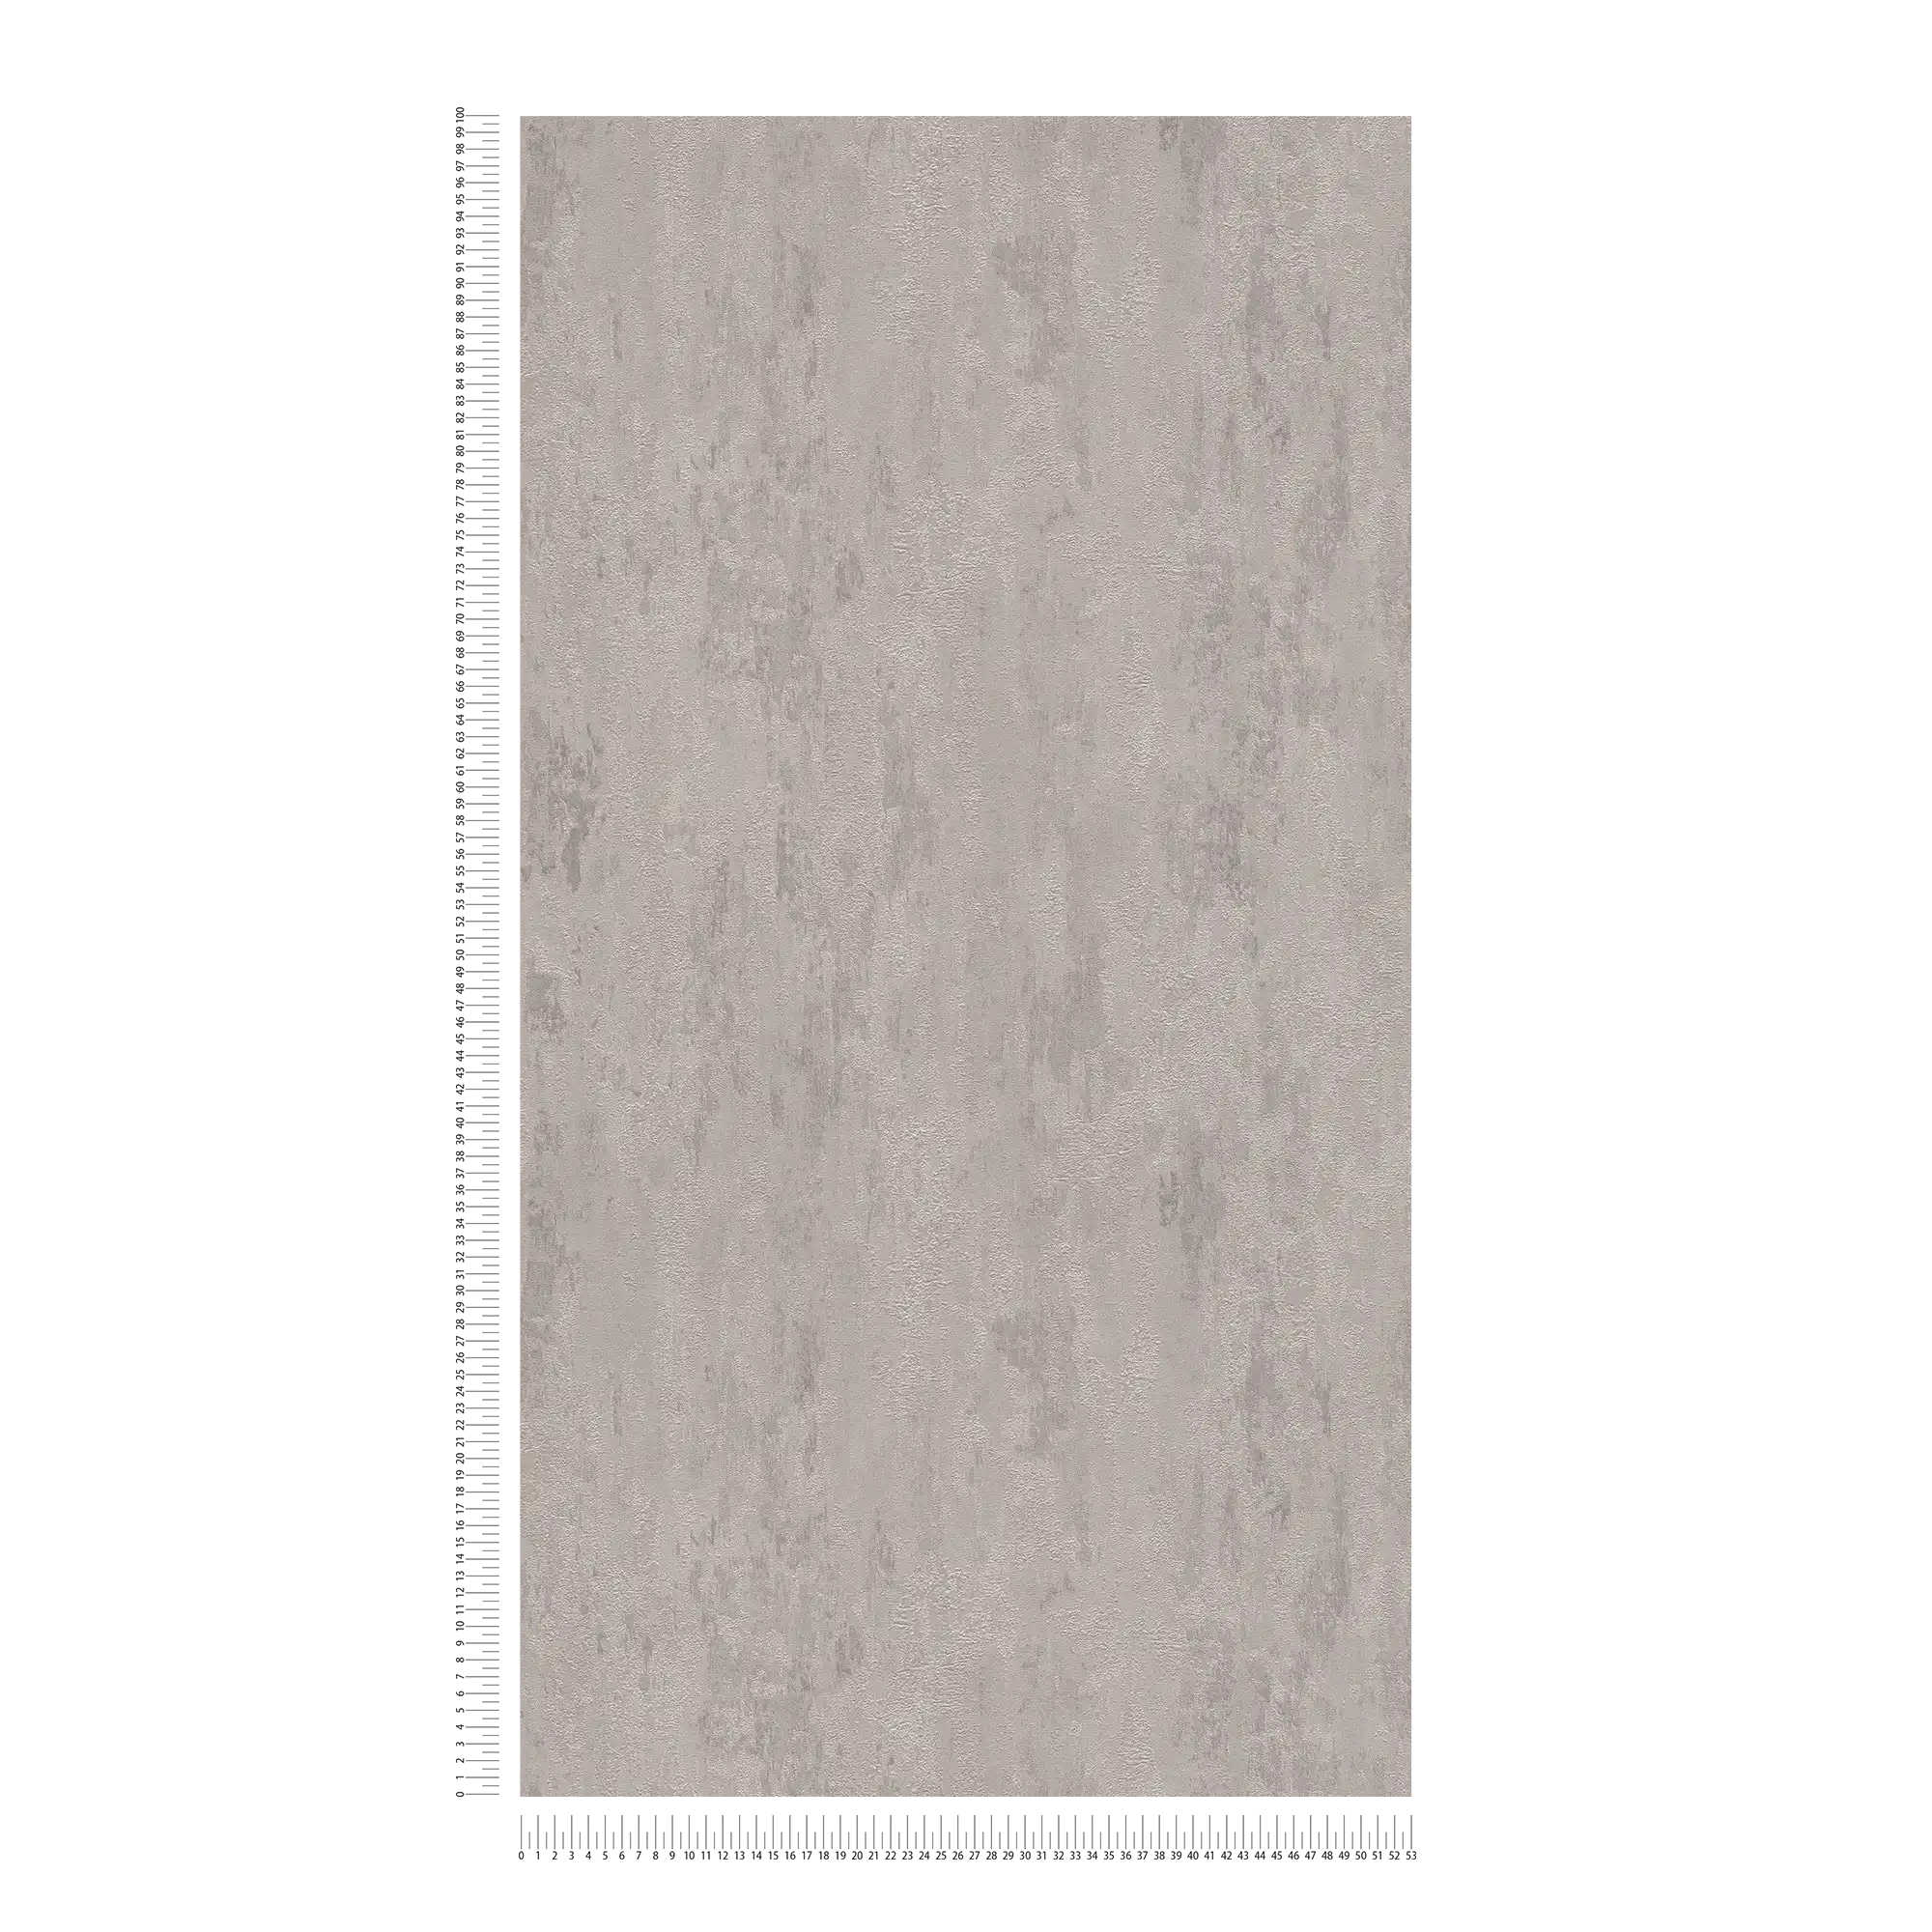             Carta da parati in stile industriale con effetto texture - crema, grigio, metallizzato
        